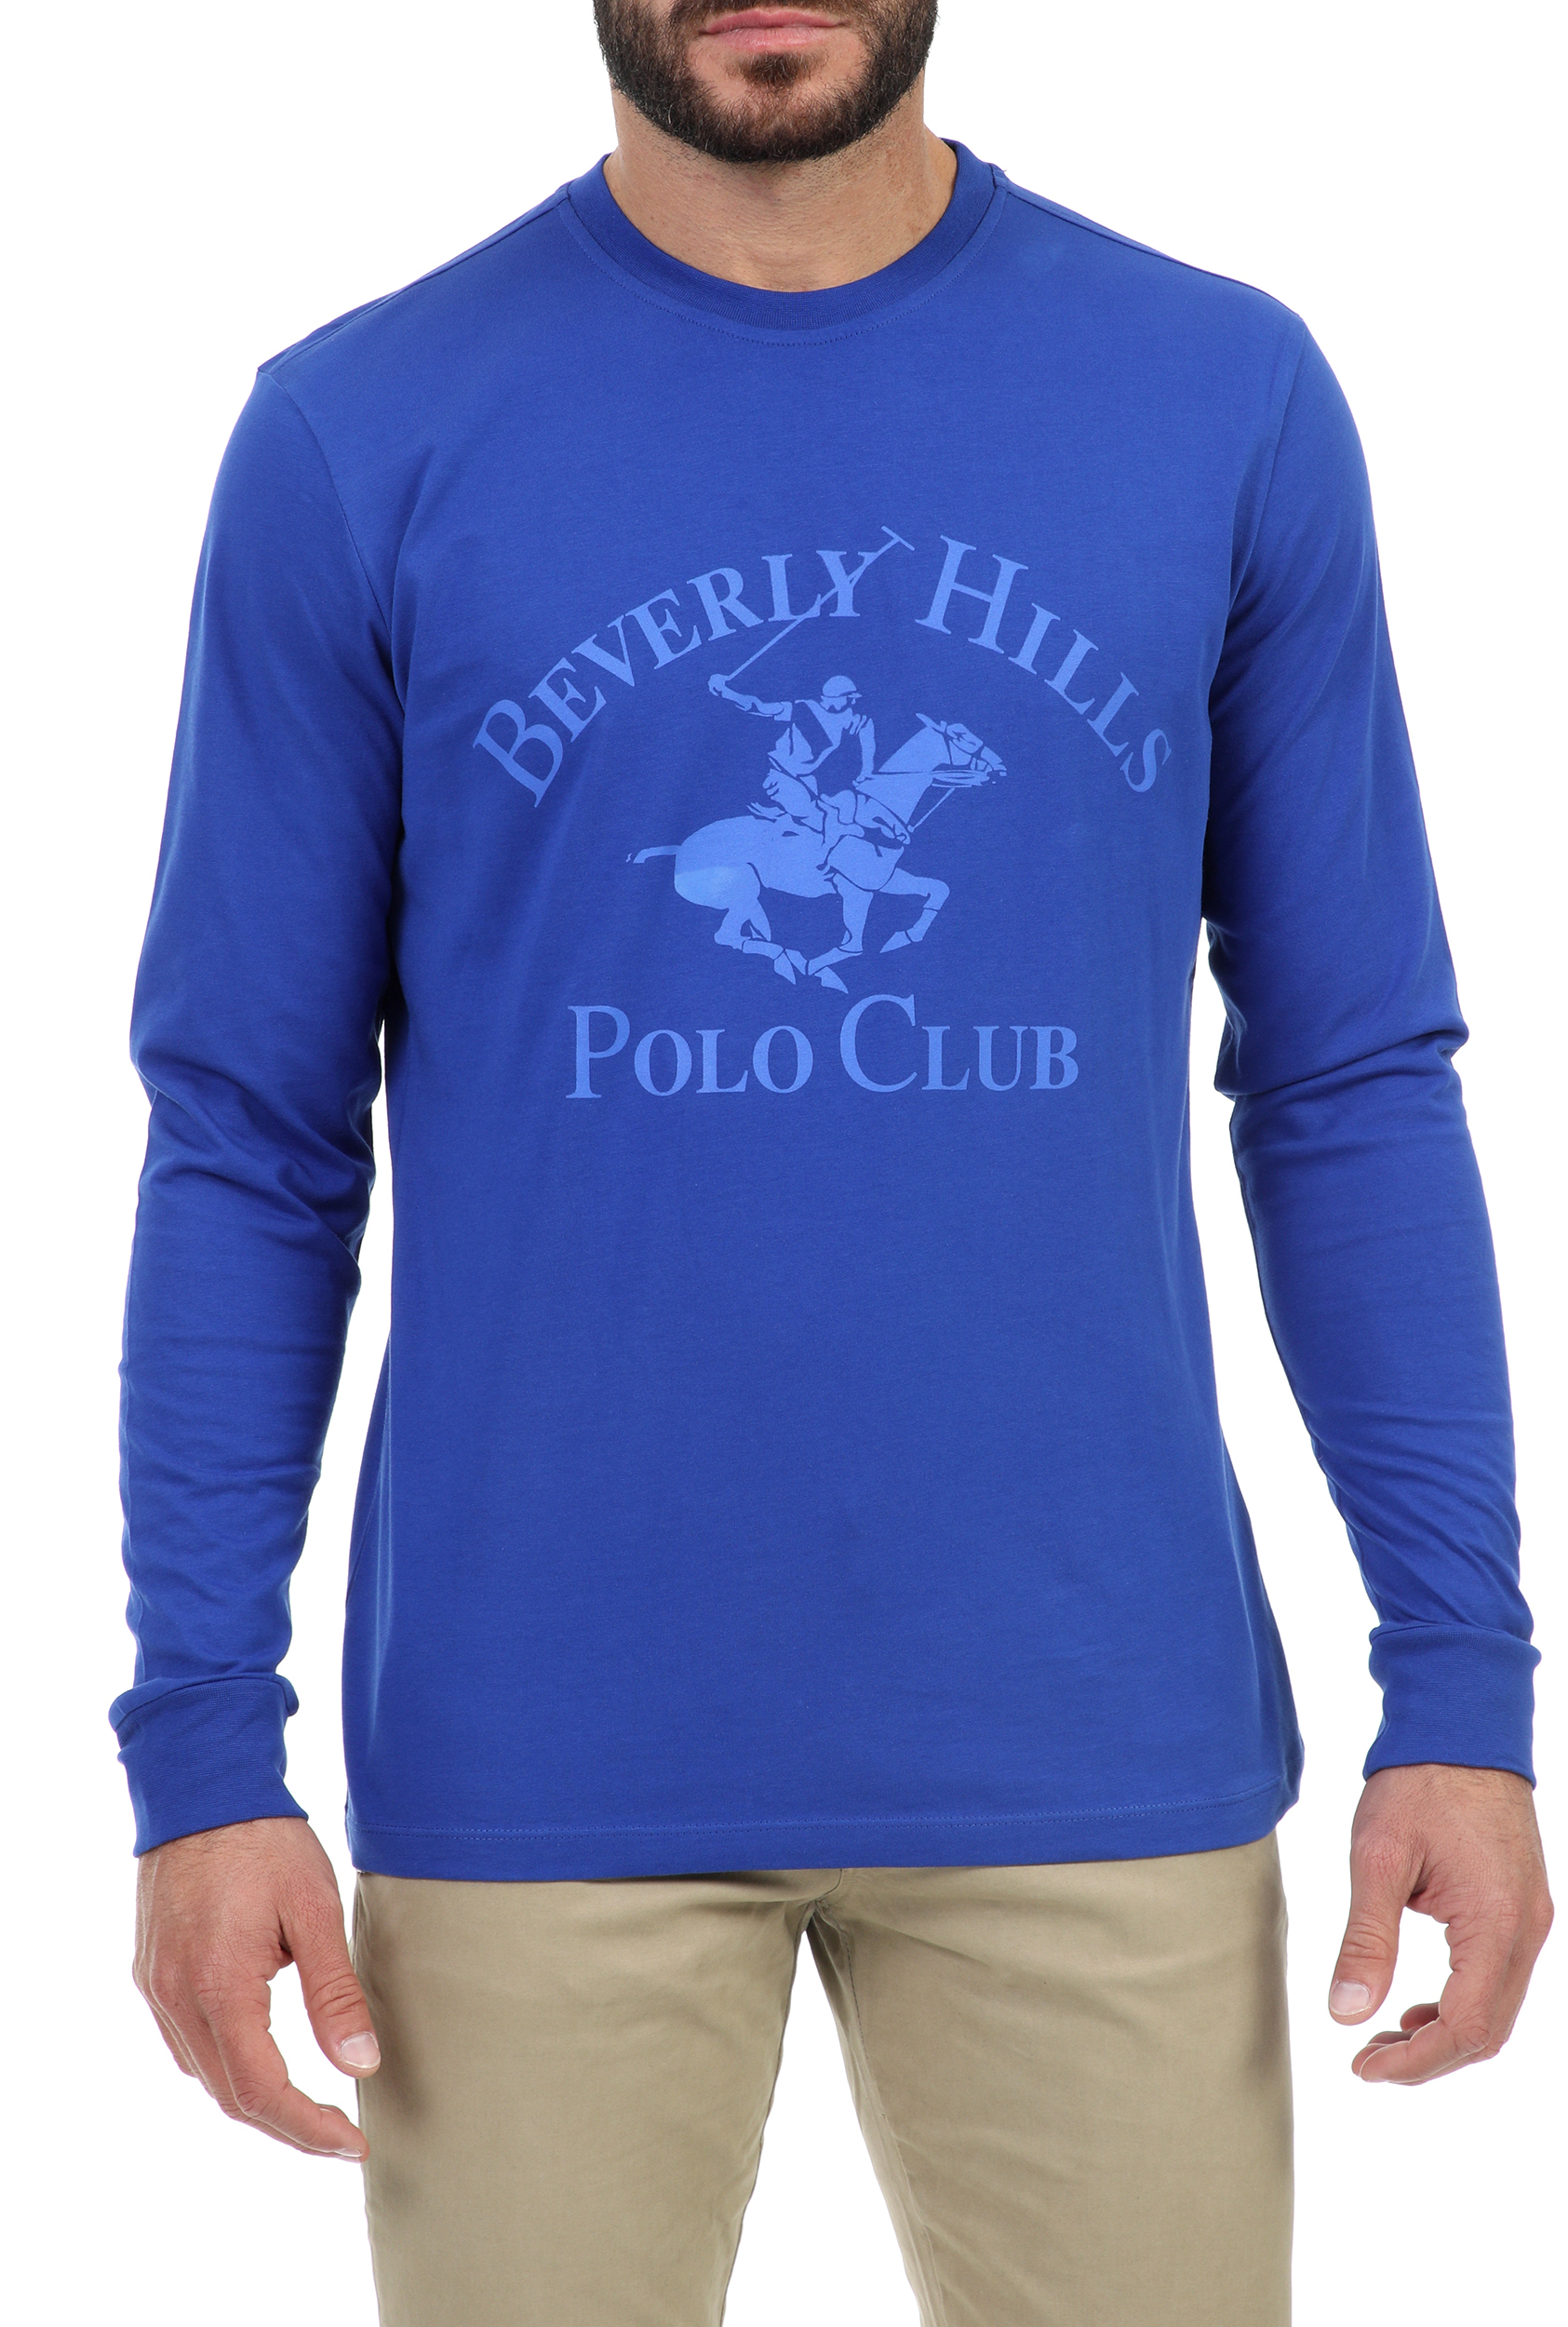 Ανδρικά/Ρούχα/Μπλούζες/Μακρυμάνικες BEVERLY HILLS POLO CLUB - Ανδρική μπλούζα BEVERLY HILLS POLO CLUB μπλε